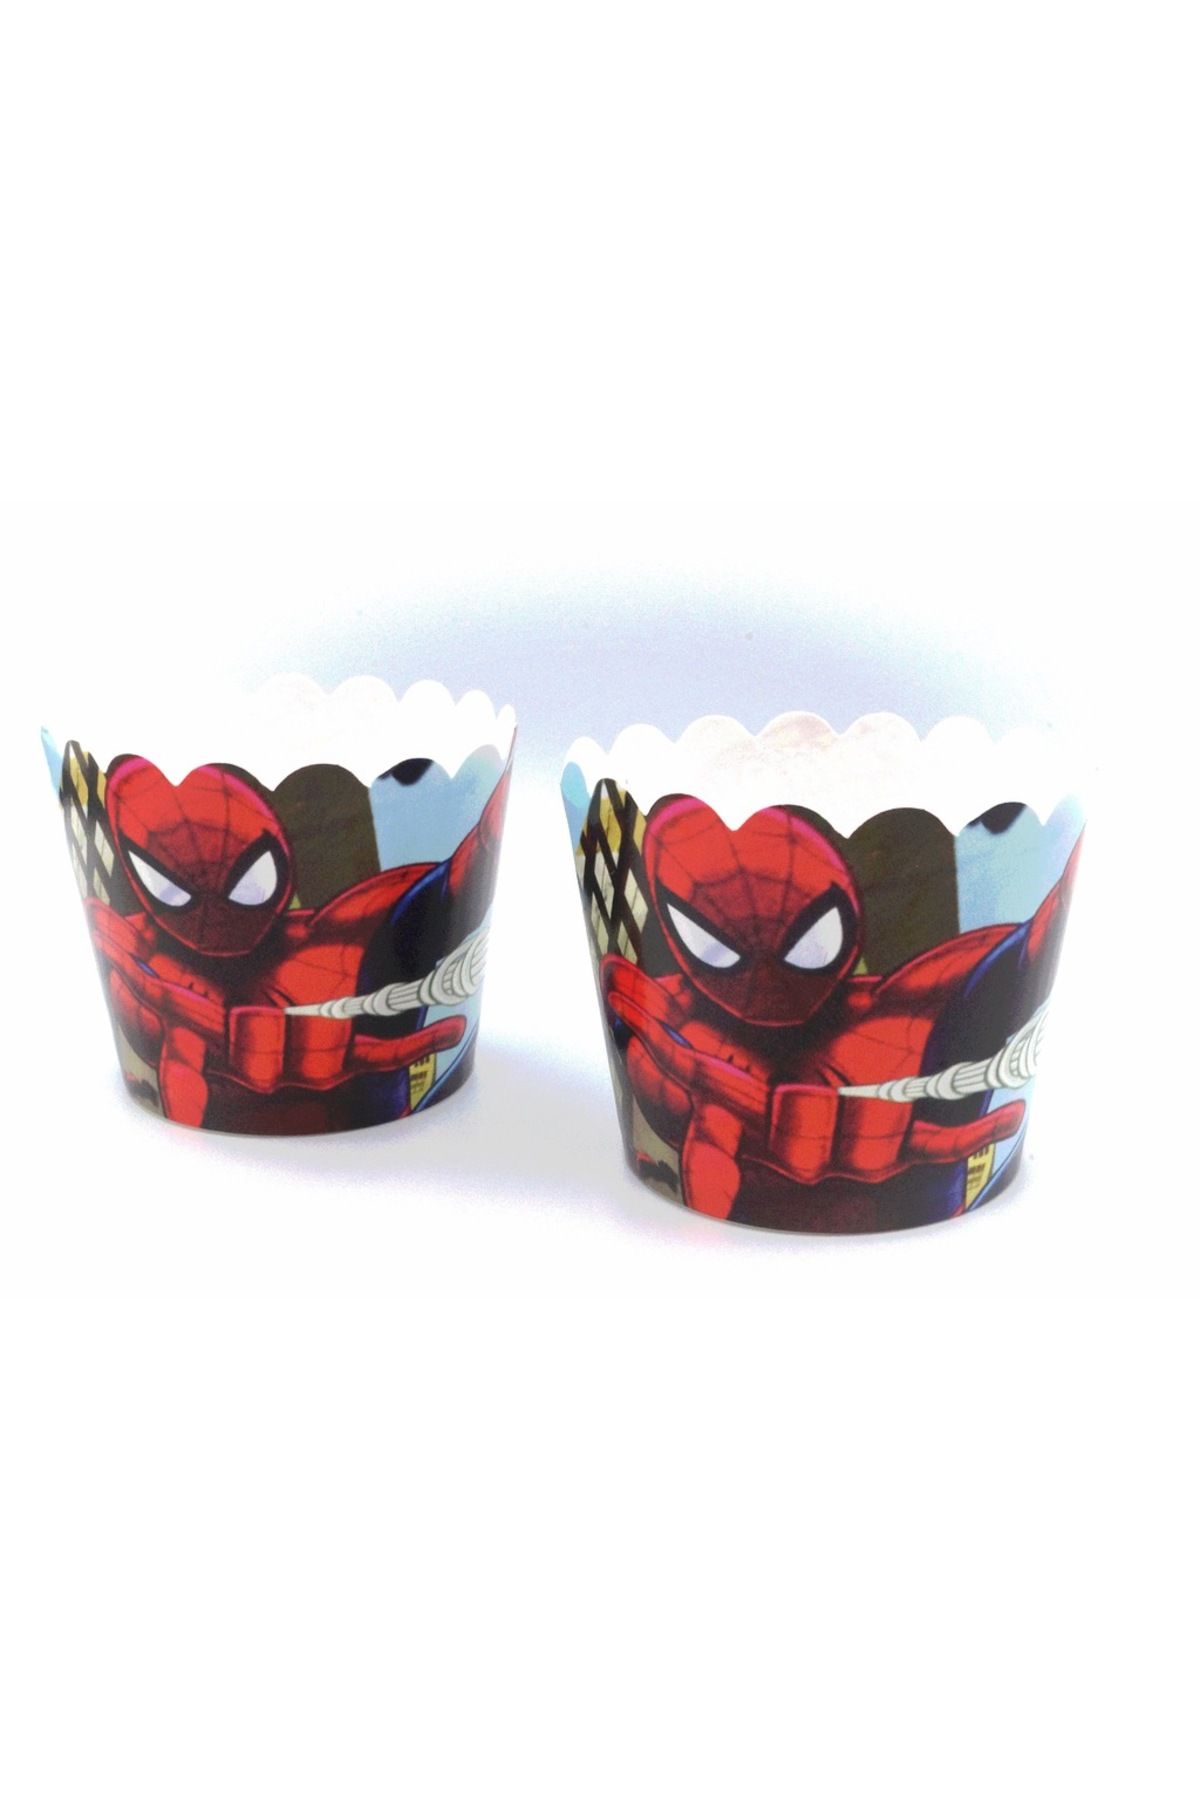 Huzur Party Store 25 Adet Örümcek Adam Konseptli Spiderman Temalı Kek Kalıbı Kabı Muffin Cupcake Stand Kapsülü